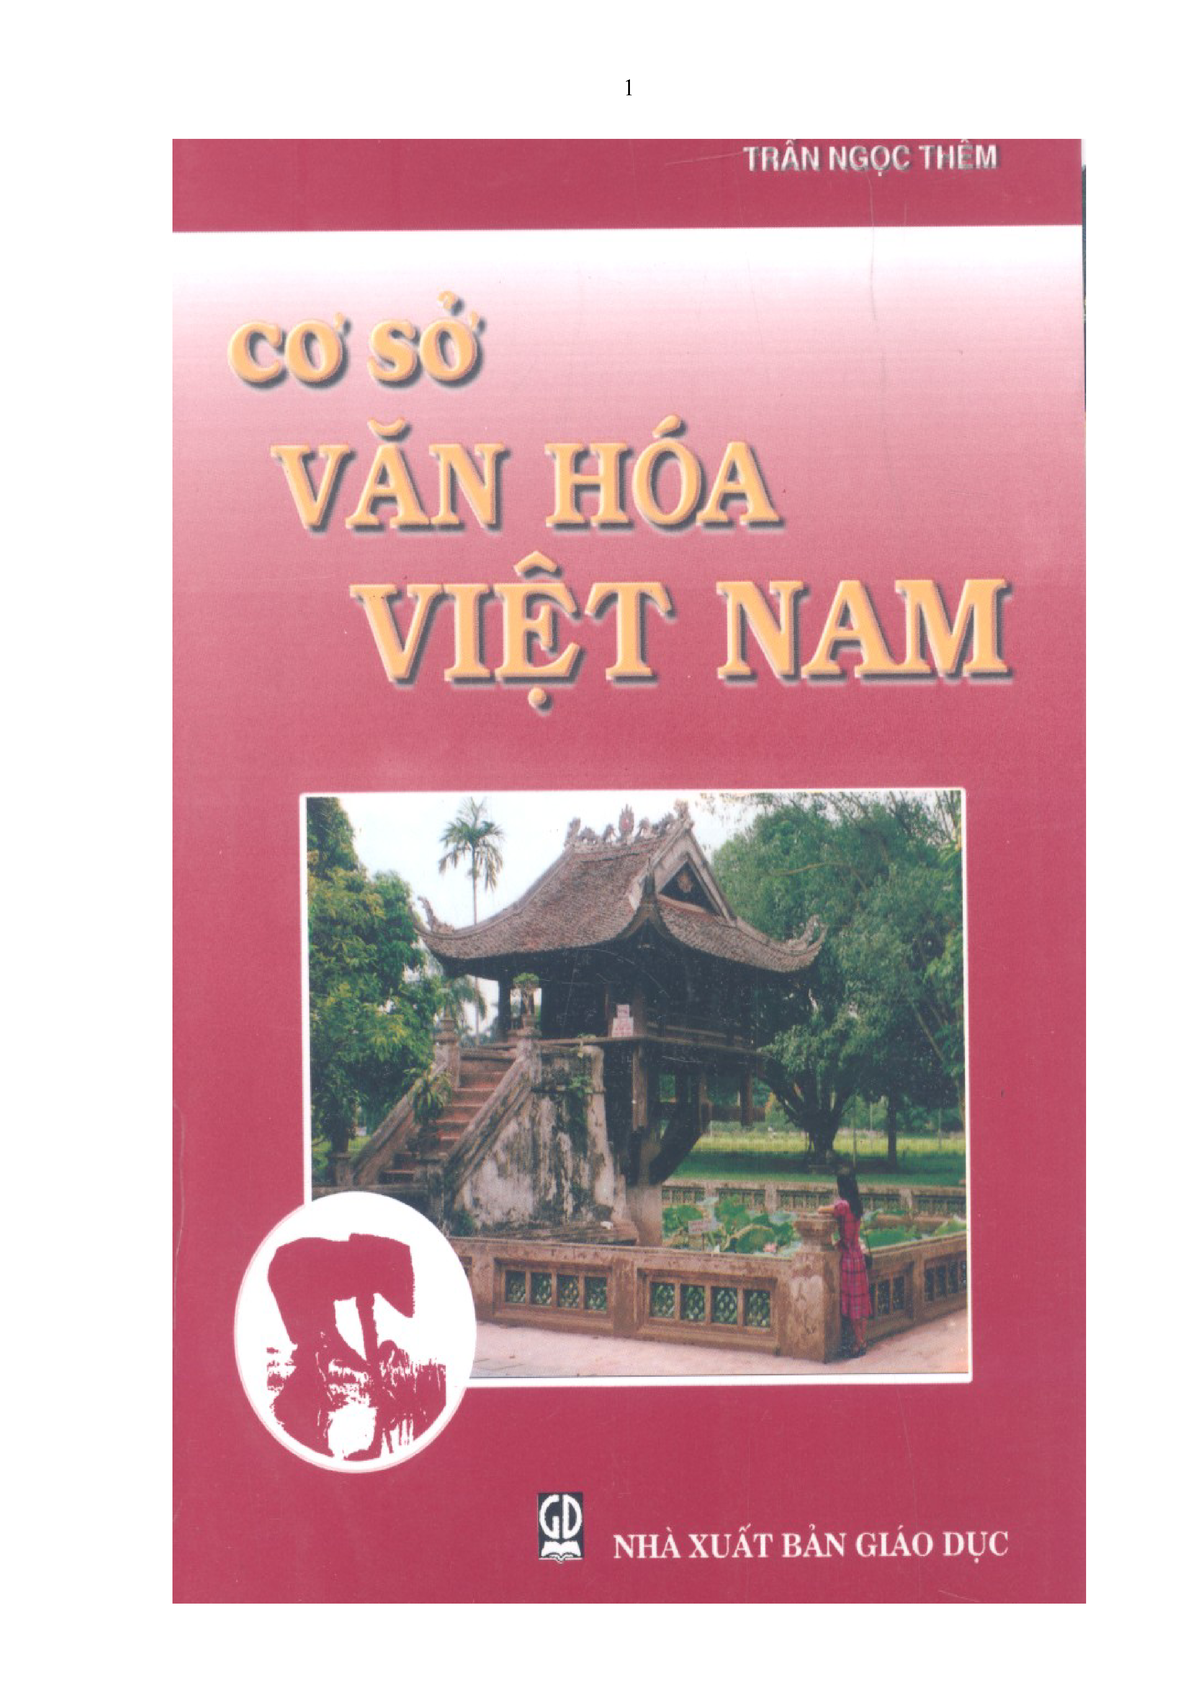 Những đặc tính của văn hóa Việt Nam theo giáo sư Trần Ngọc Thêm?
